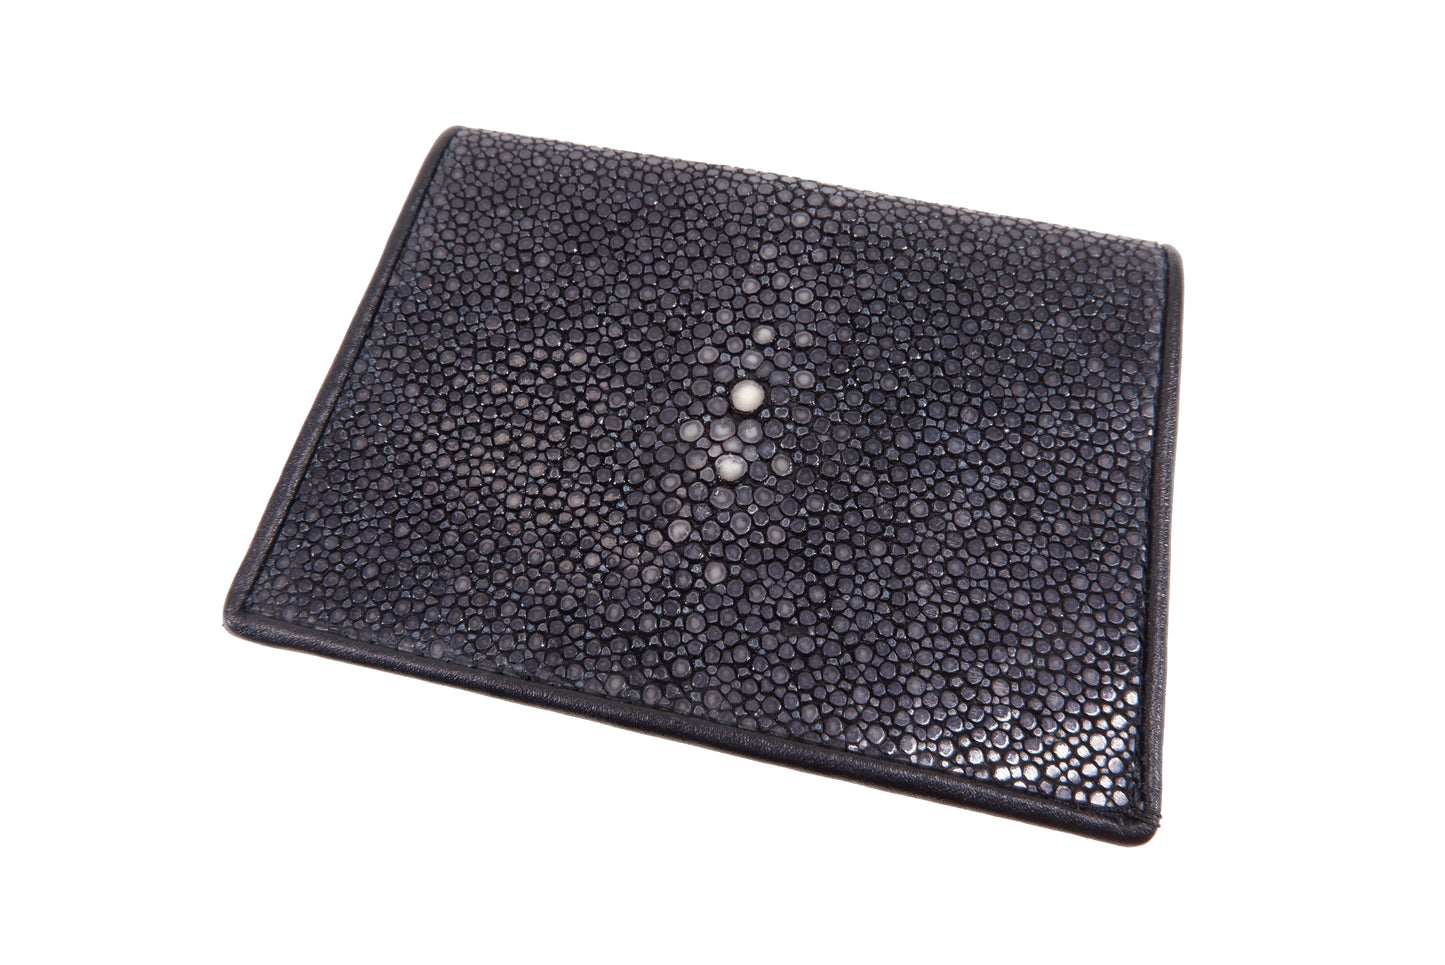 Genuine Polished Stingray Skin Business & Credit Card Holder Wallet Black